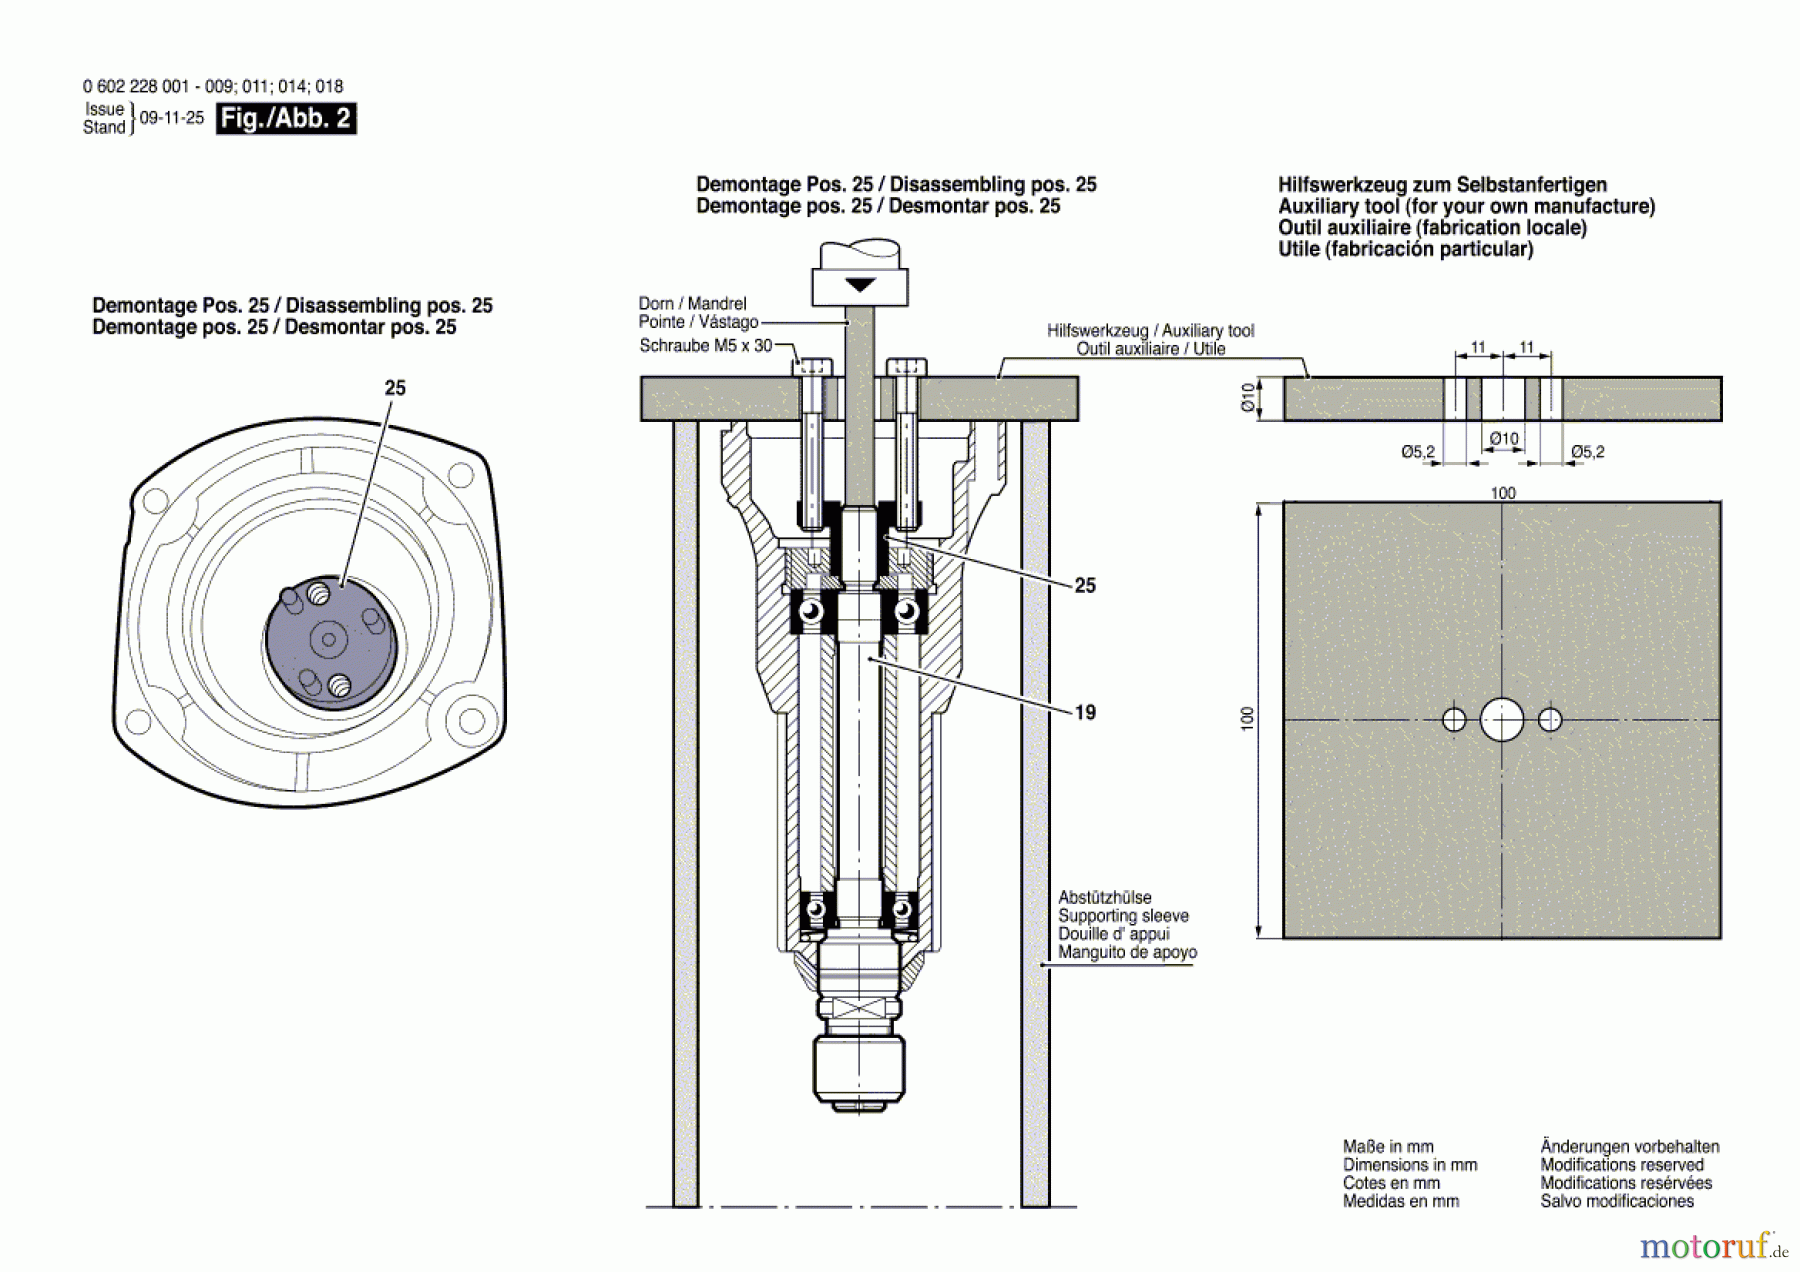  Bosch Werkzeug Hf-Geradschleifer ---- Seite 2